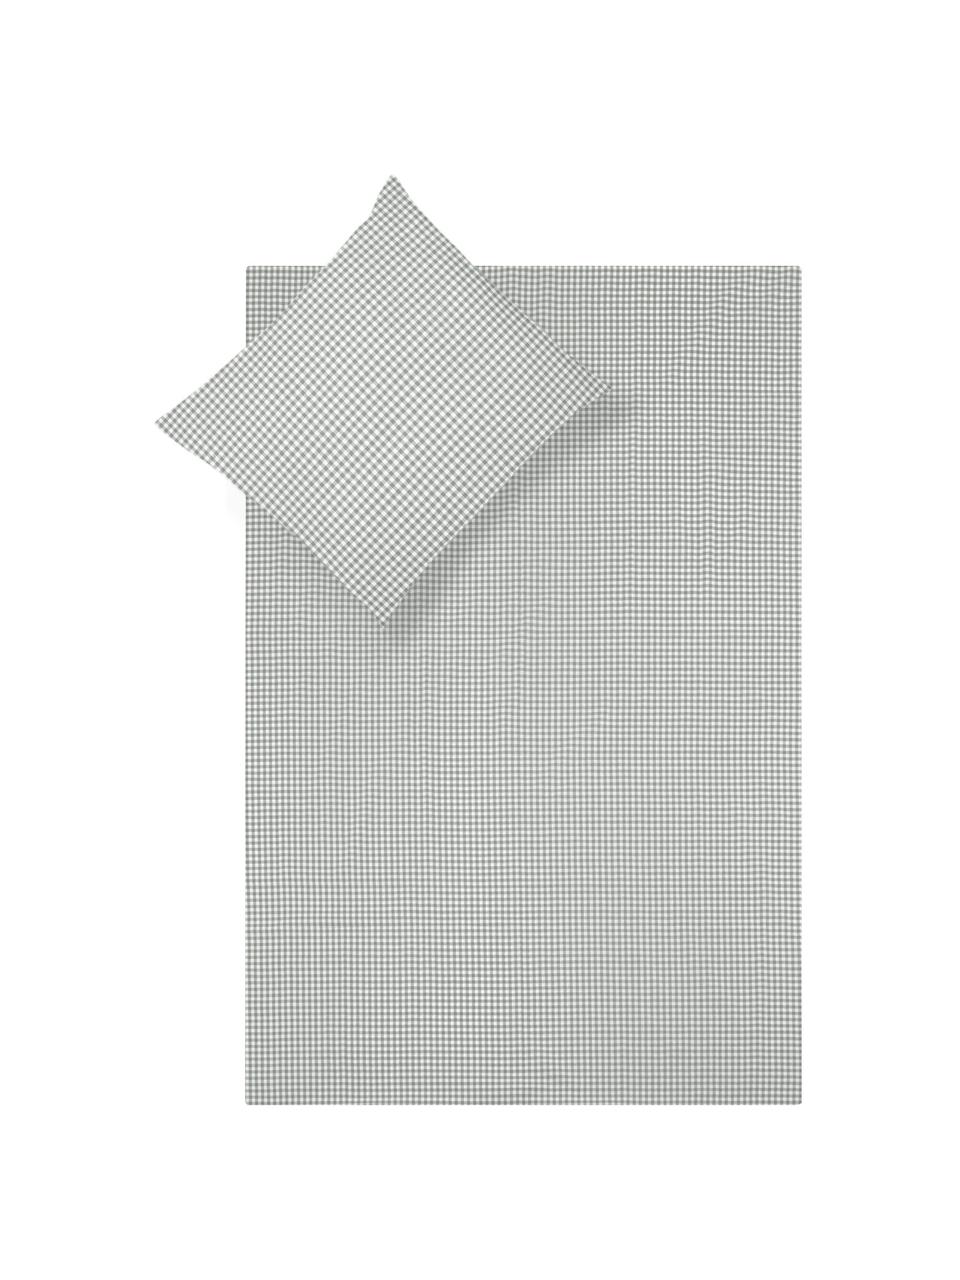 Katoenen dekbedovertrek Scotty, Katoen, Lichtgrijs/wit, 140 x 200 cm + 1 kussenhoes 60 x 70 cm